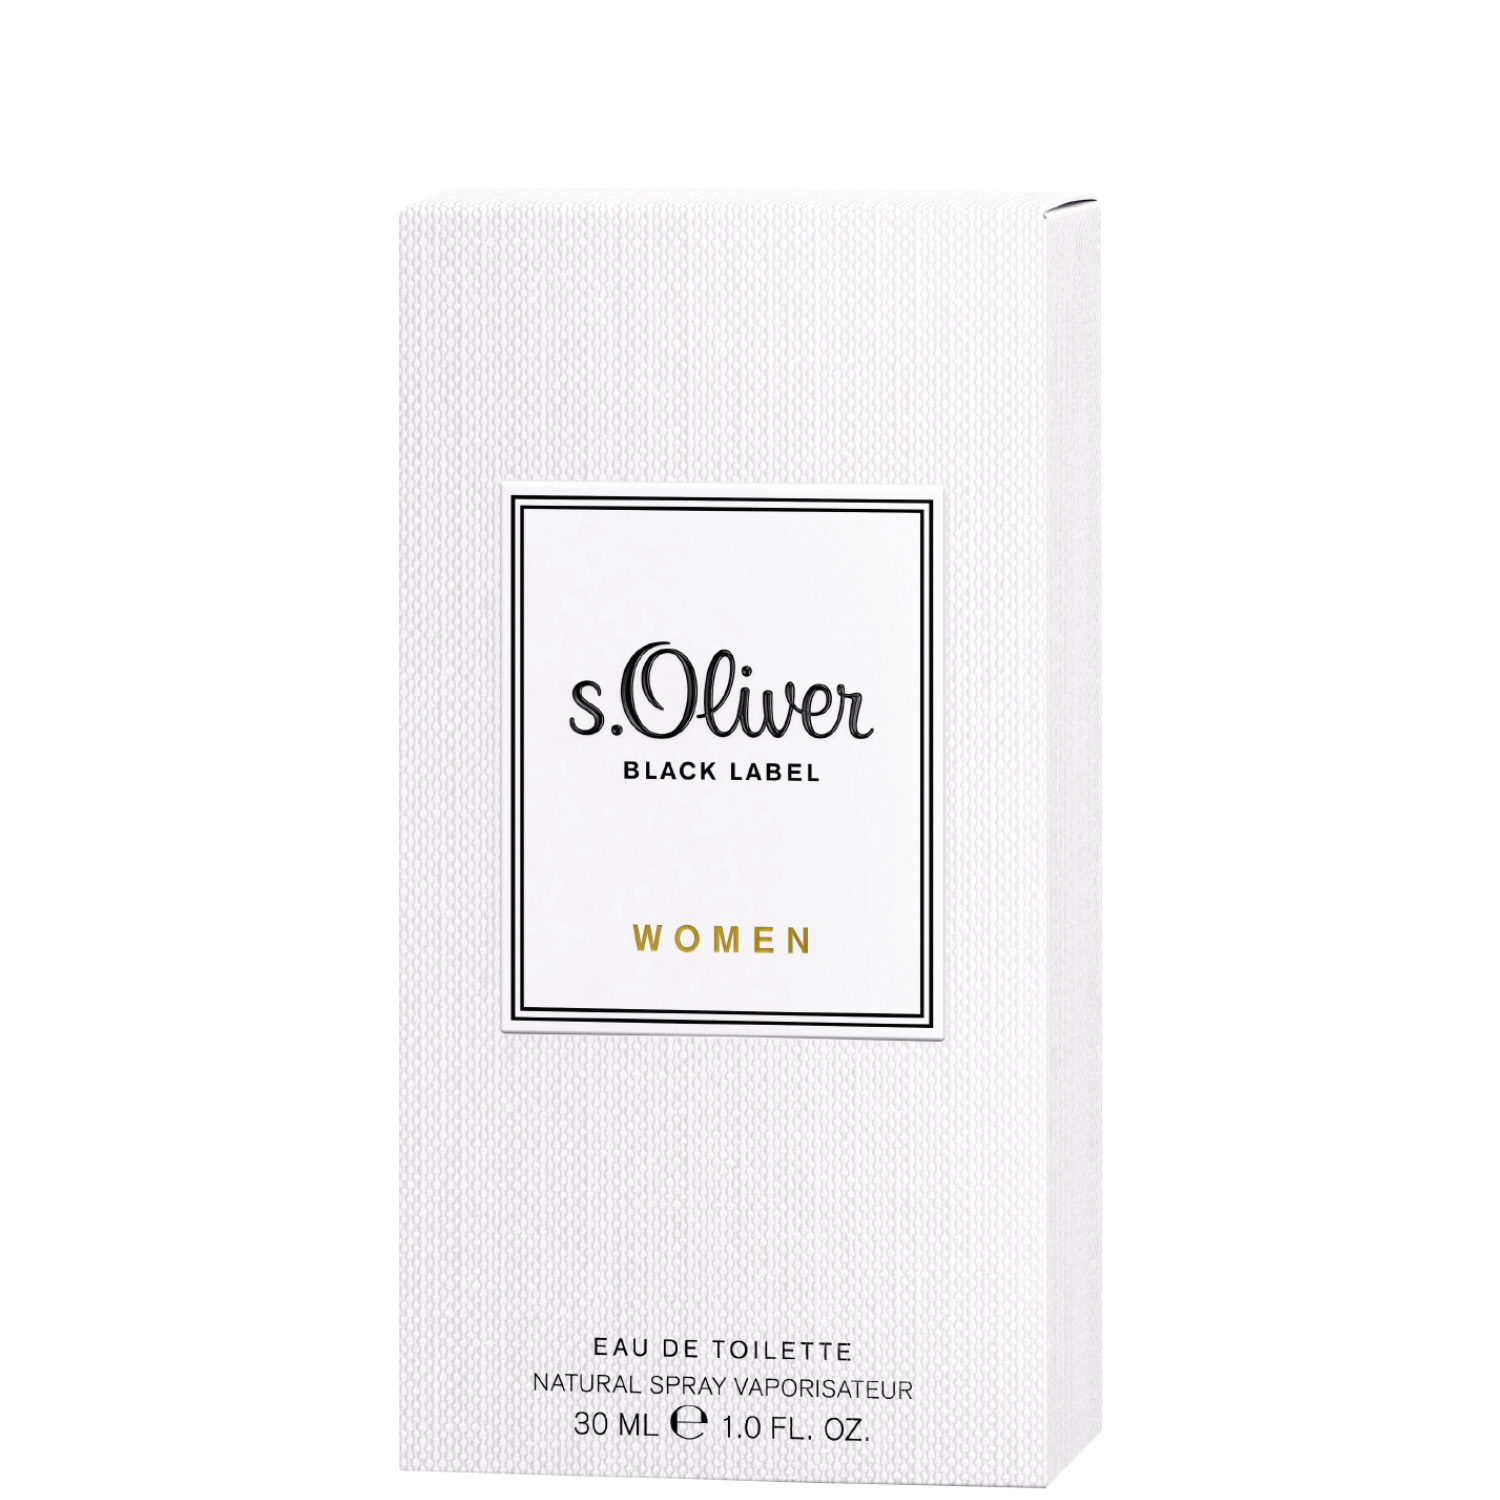 S.Oliver Black Label Women Eau de Toilette 30ml